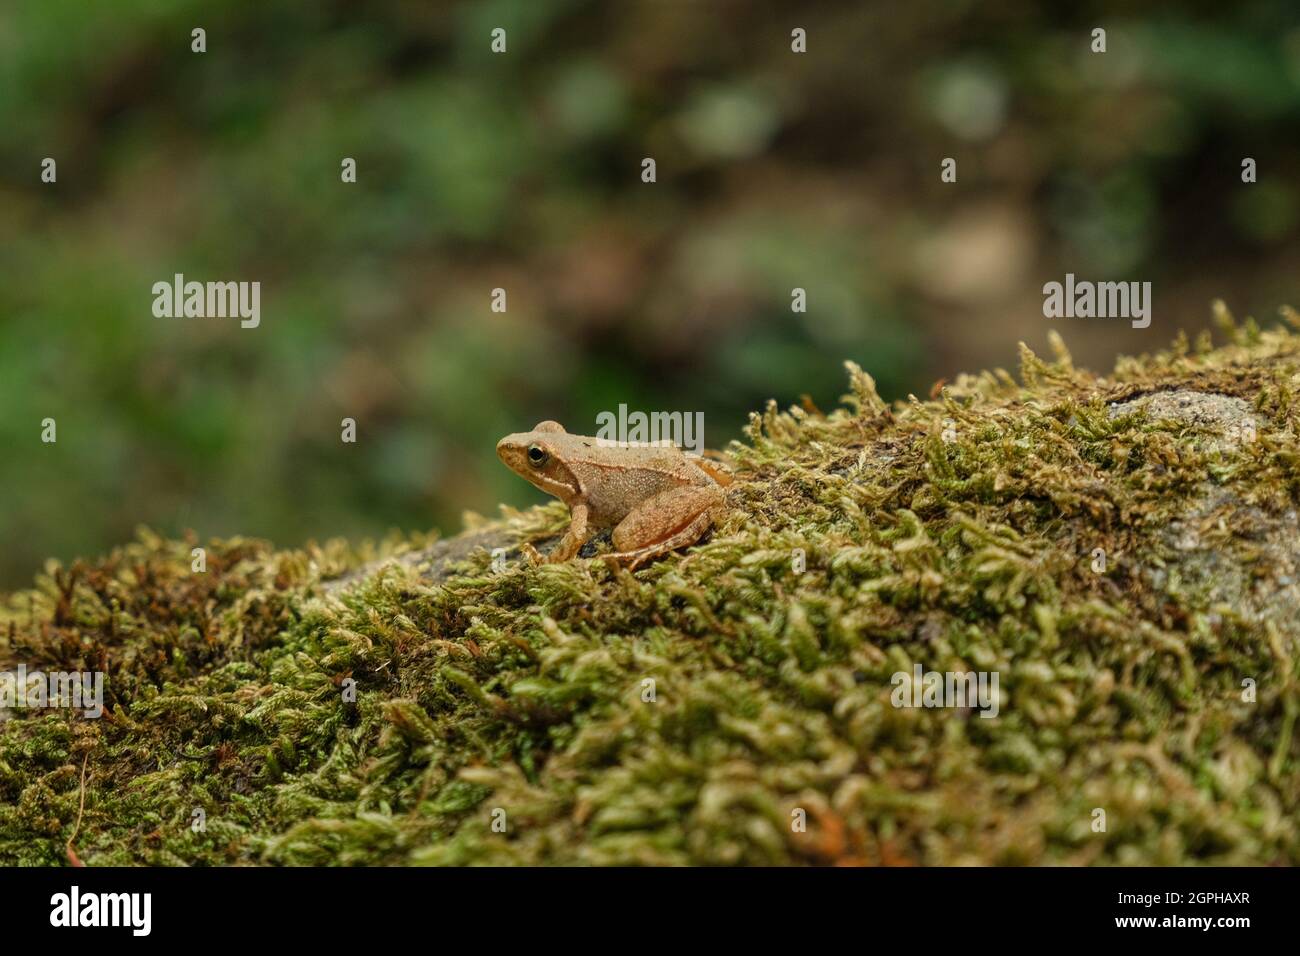 Vista aislada de la rana silvestre mientras descansa sobre el ecosistema del bosque, animales anfibios Foto de stock